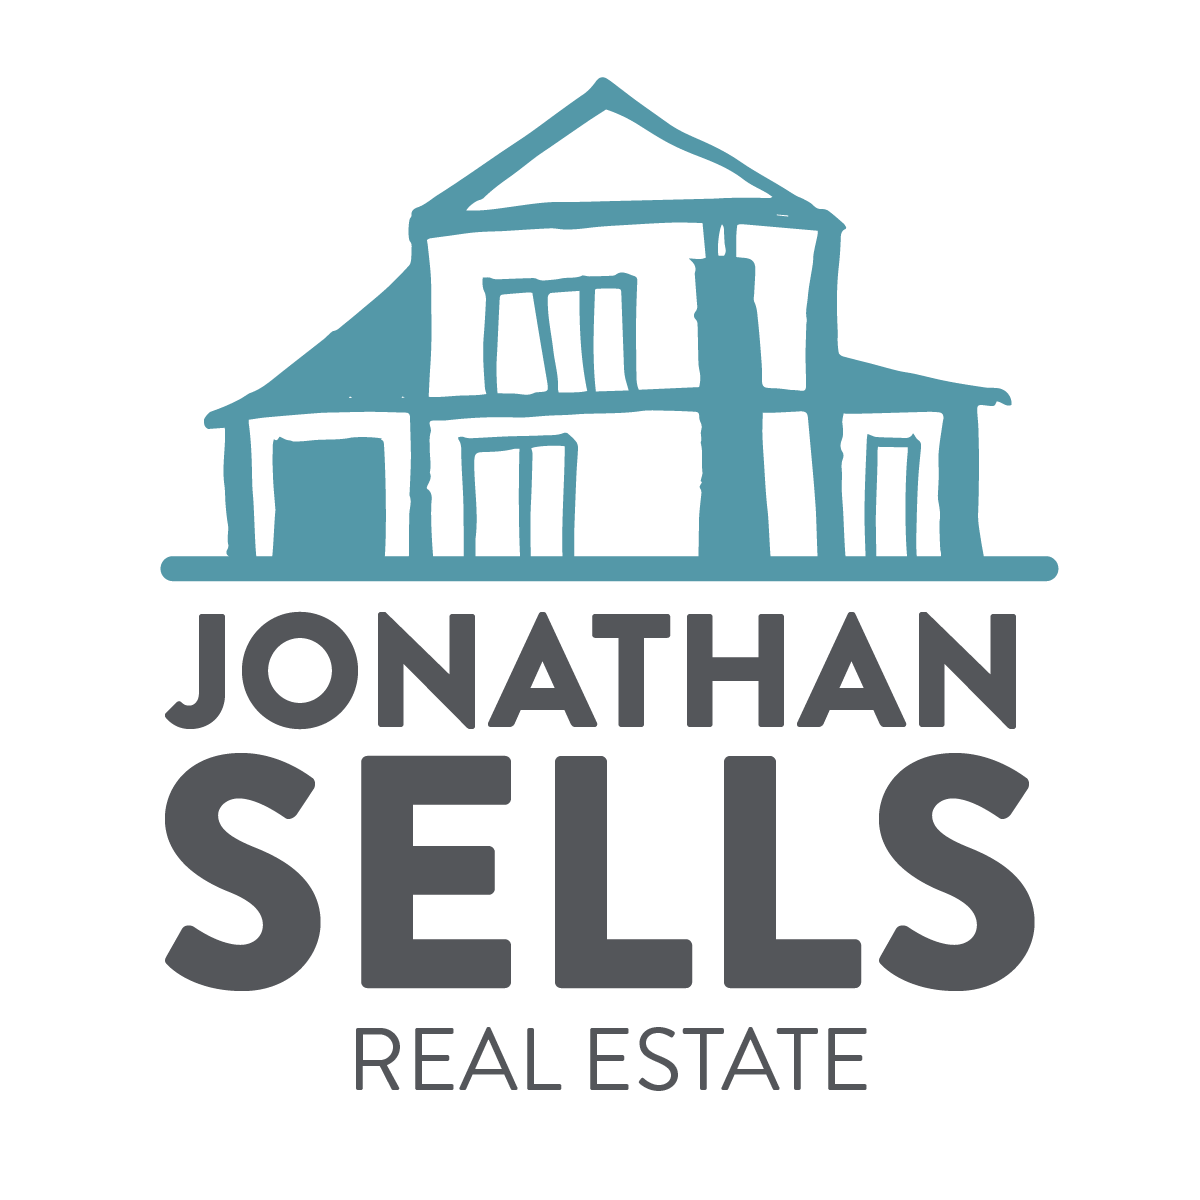 Jonathan Sells Real Estate